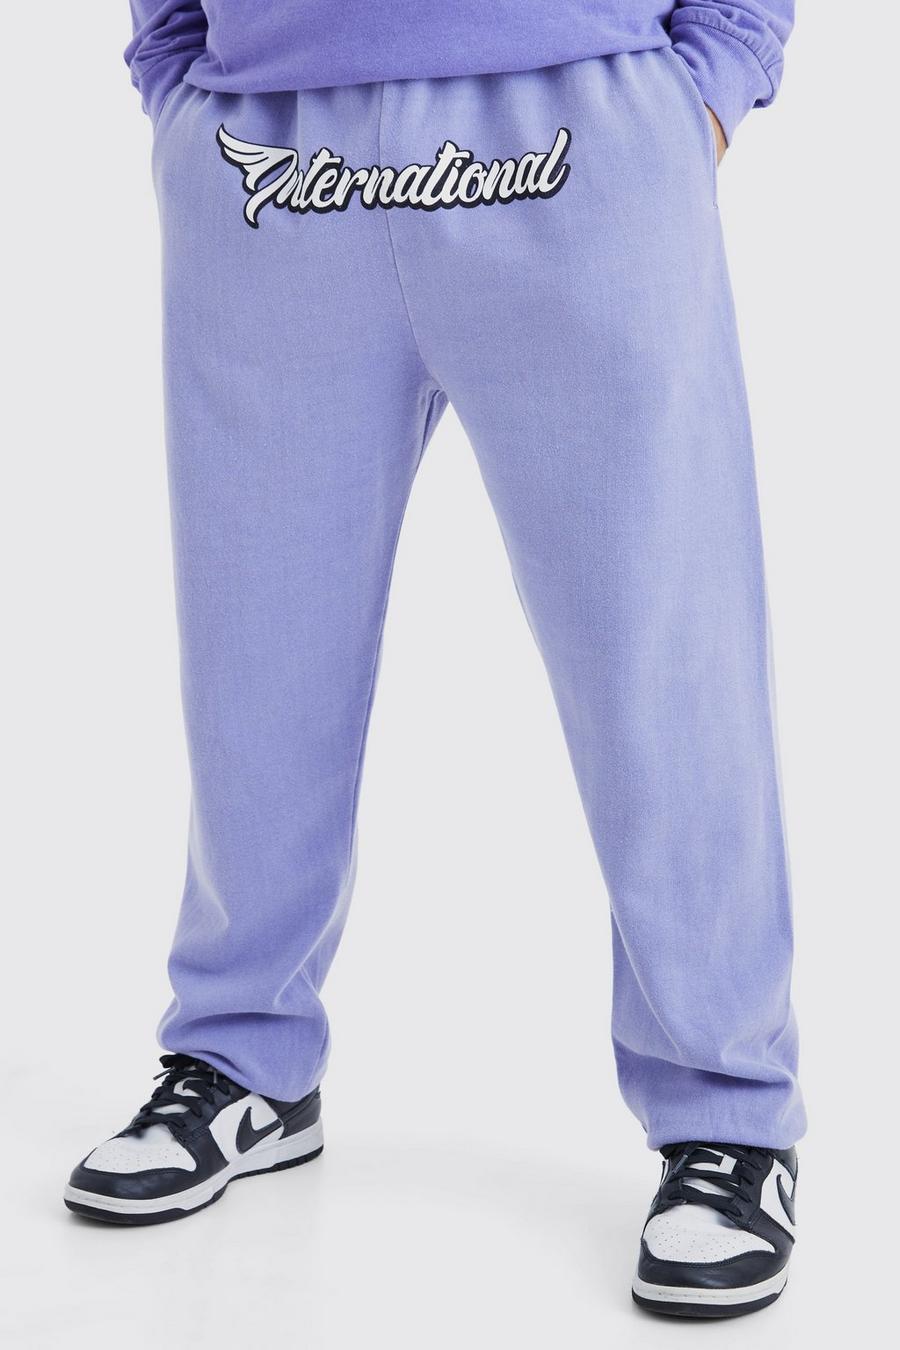 Pantalón deportivo oversize con estampado gráfico Worldwide en la entrepierna, Purple viola